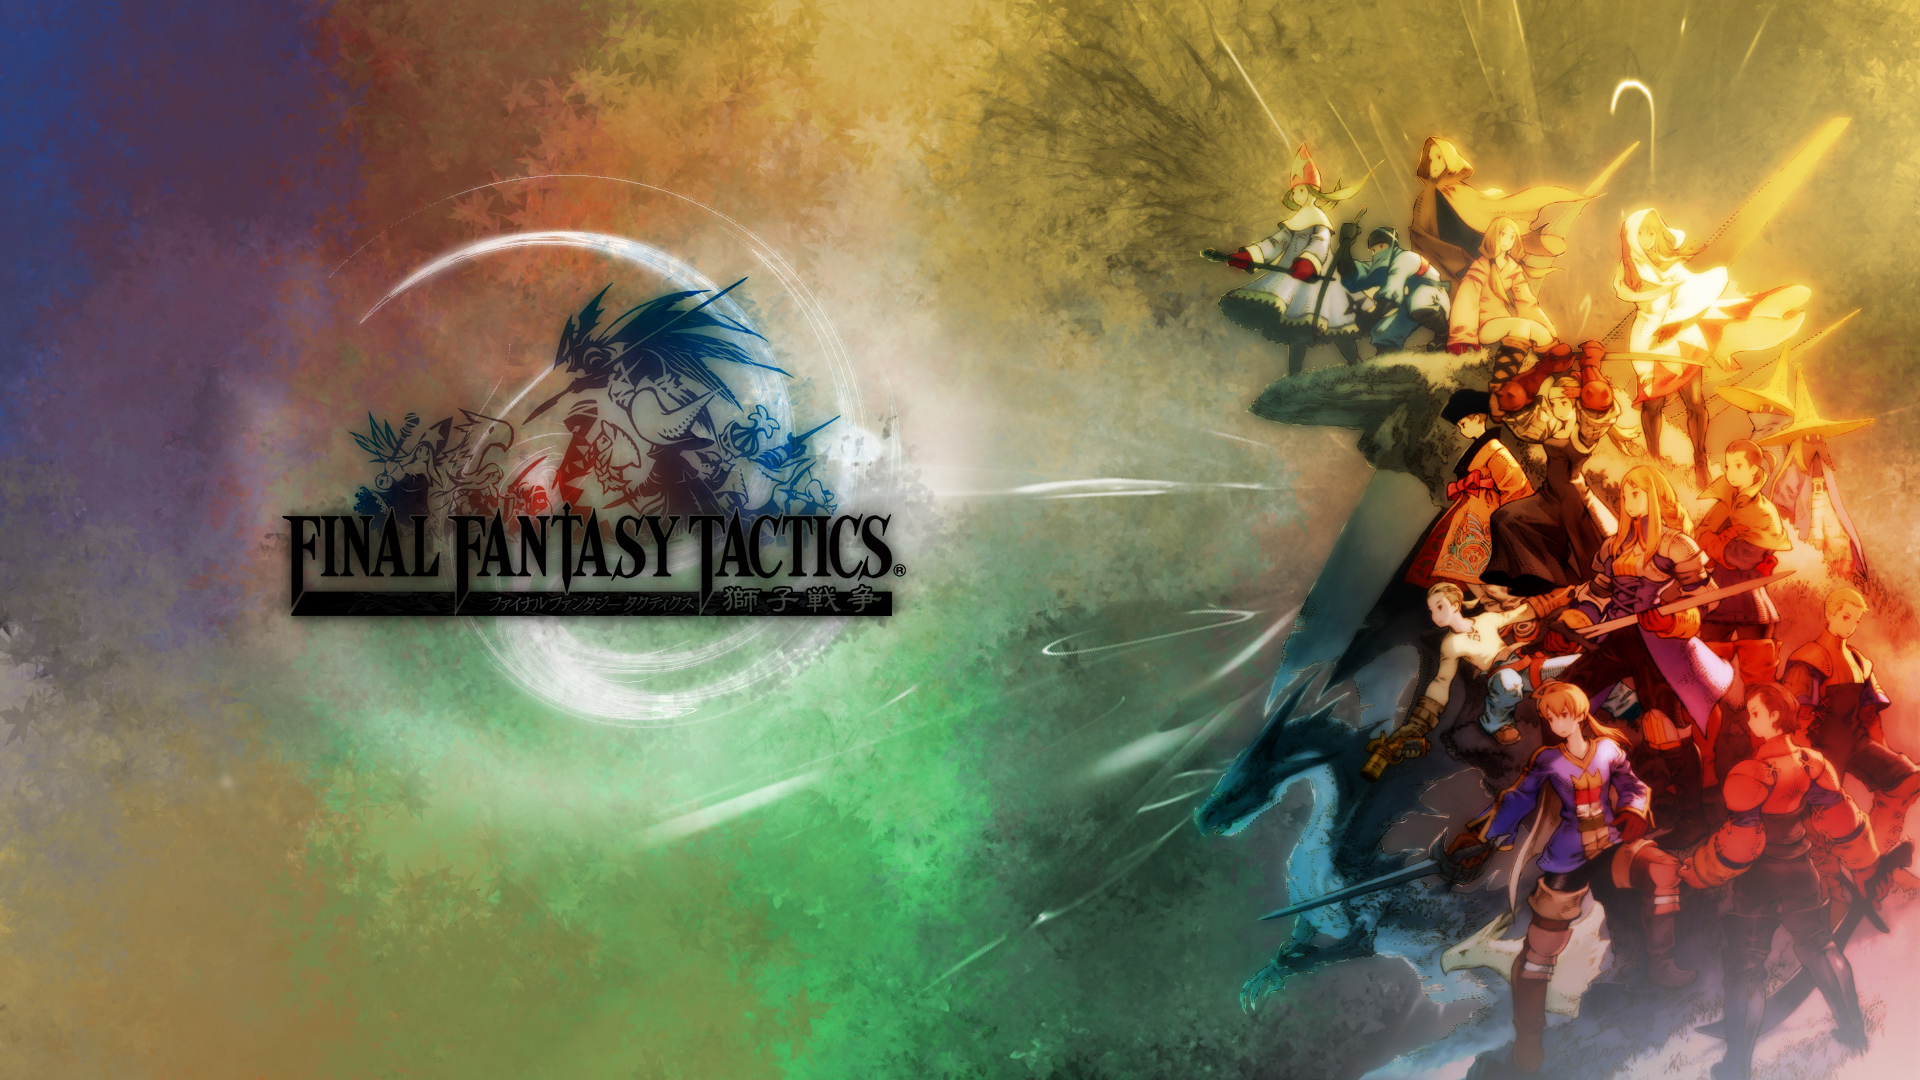 Final Fantasy Tactics HD Wallpaper. Background Imagex1080